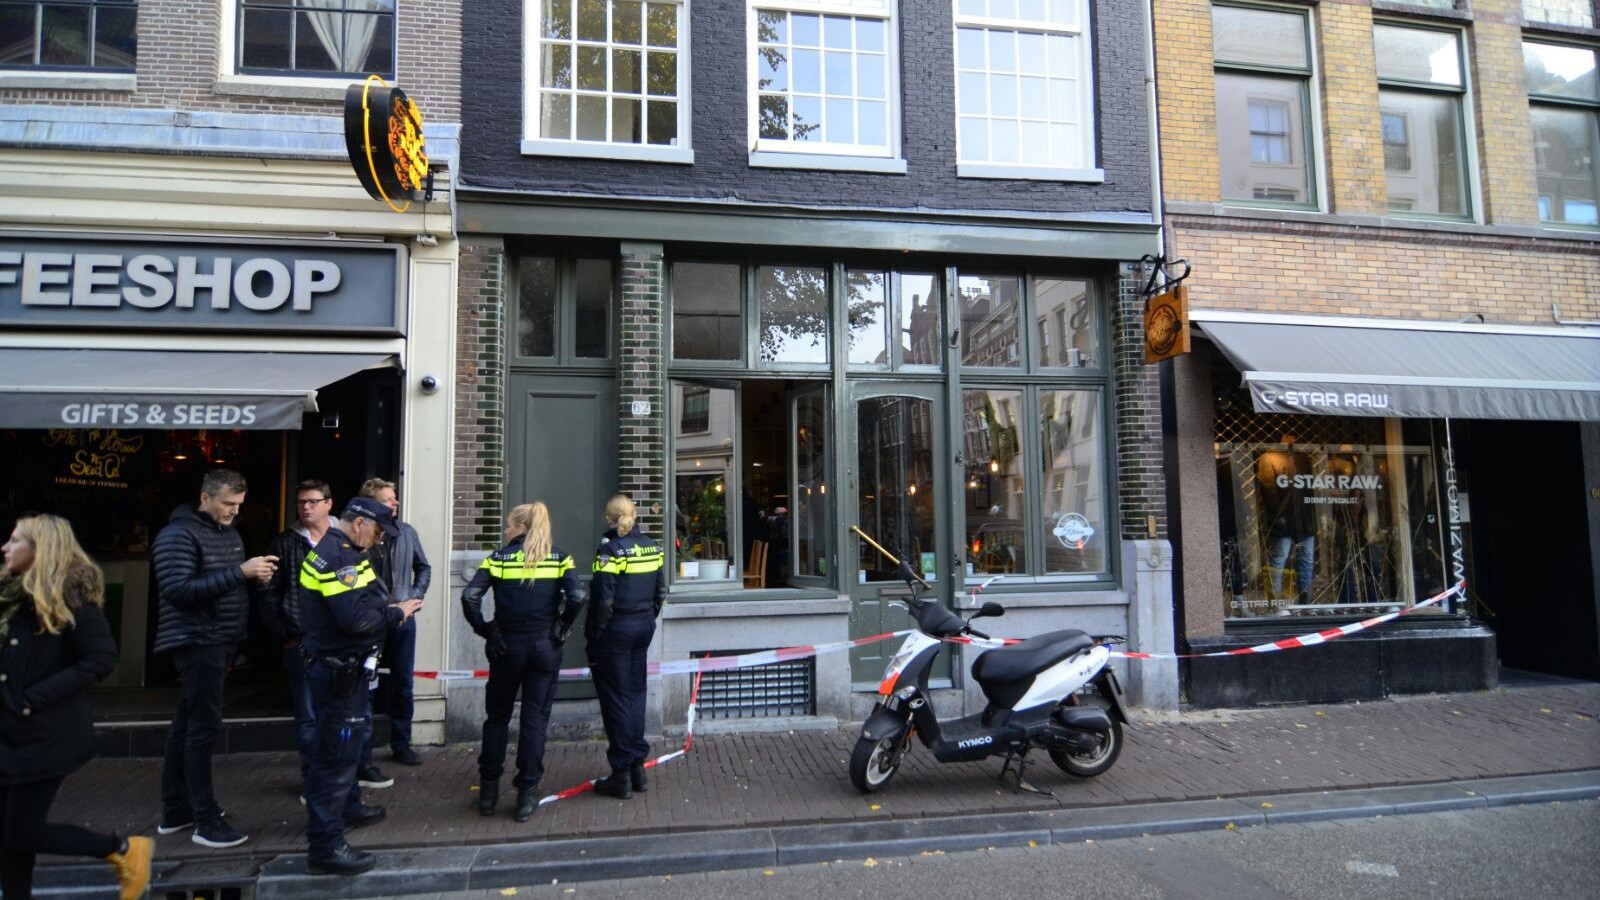 Restaurant Haarlemmerstraat meerdere keren beschoten